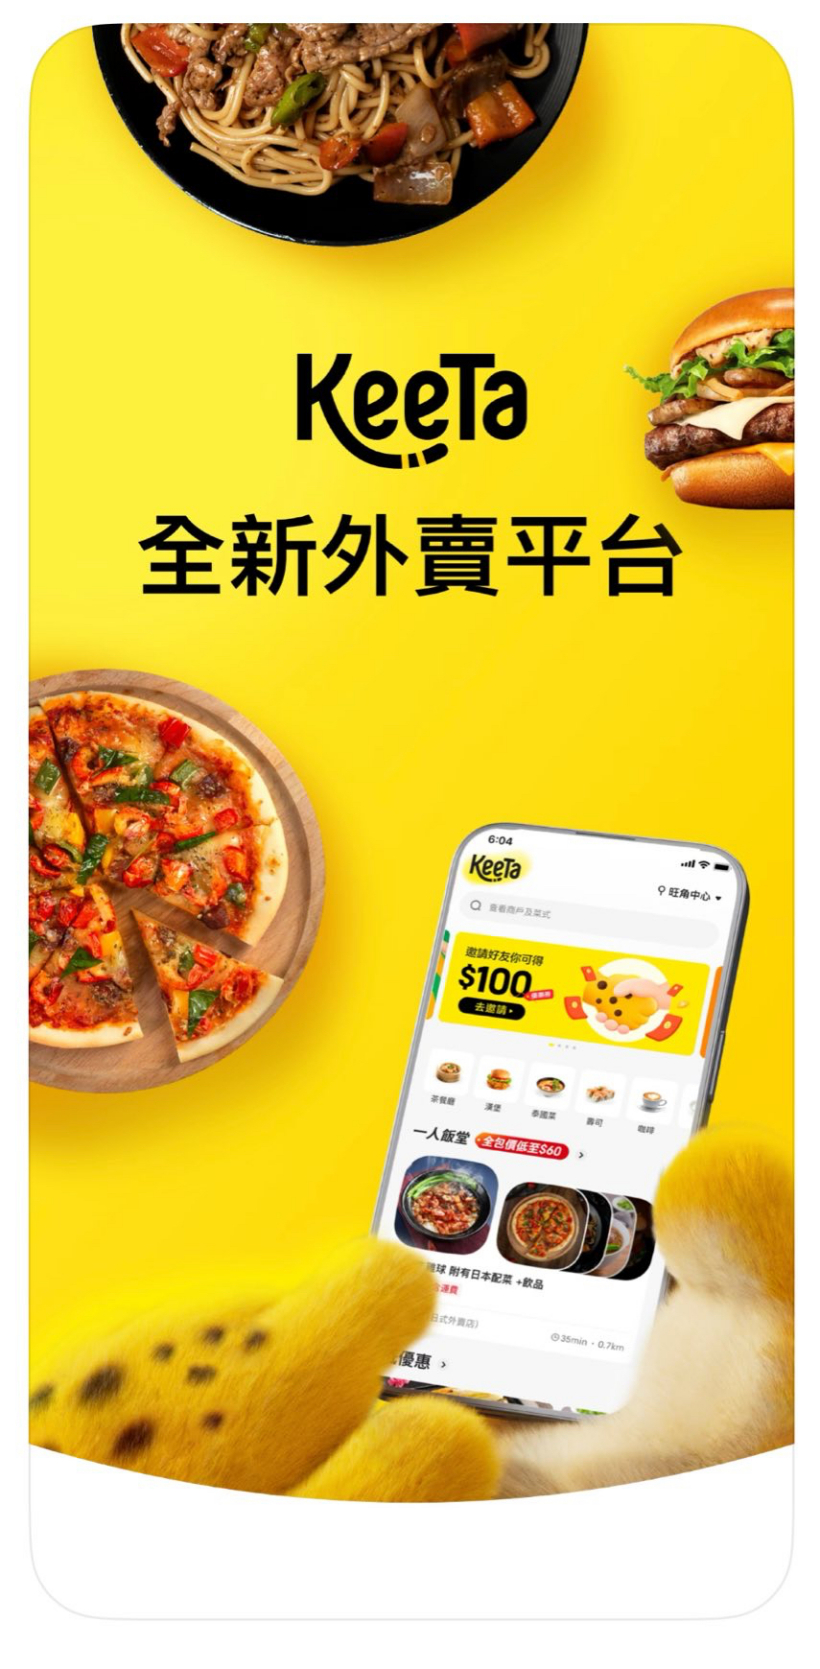 美团在香港推出外卖品牌 KeeTa：明日开送，预计年底覆盖全港